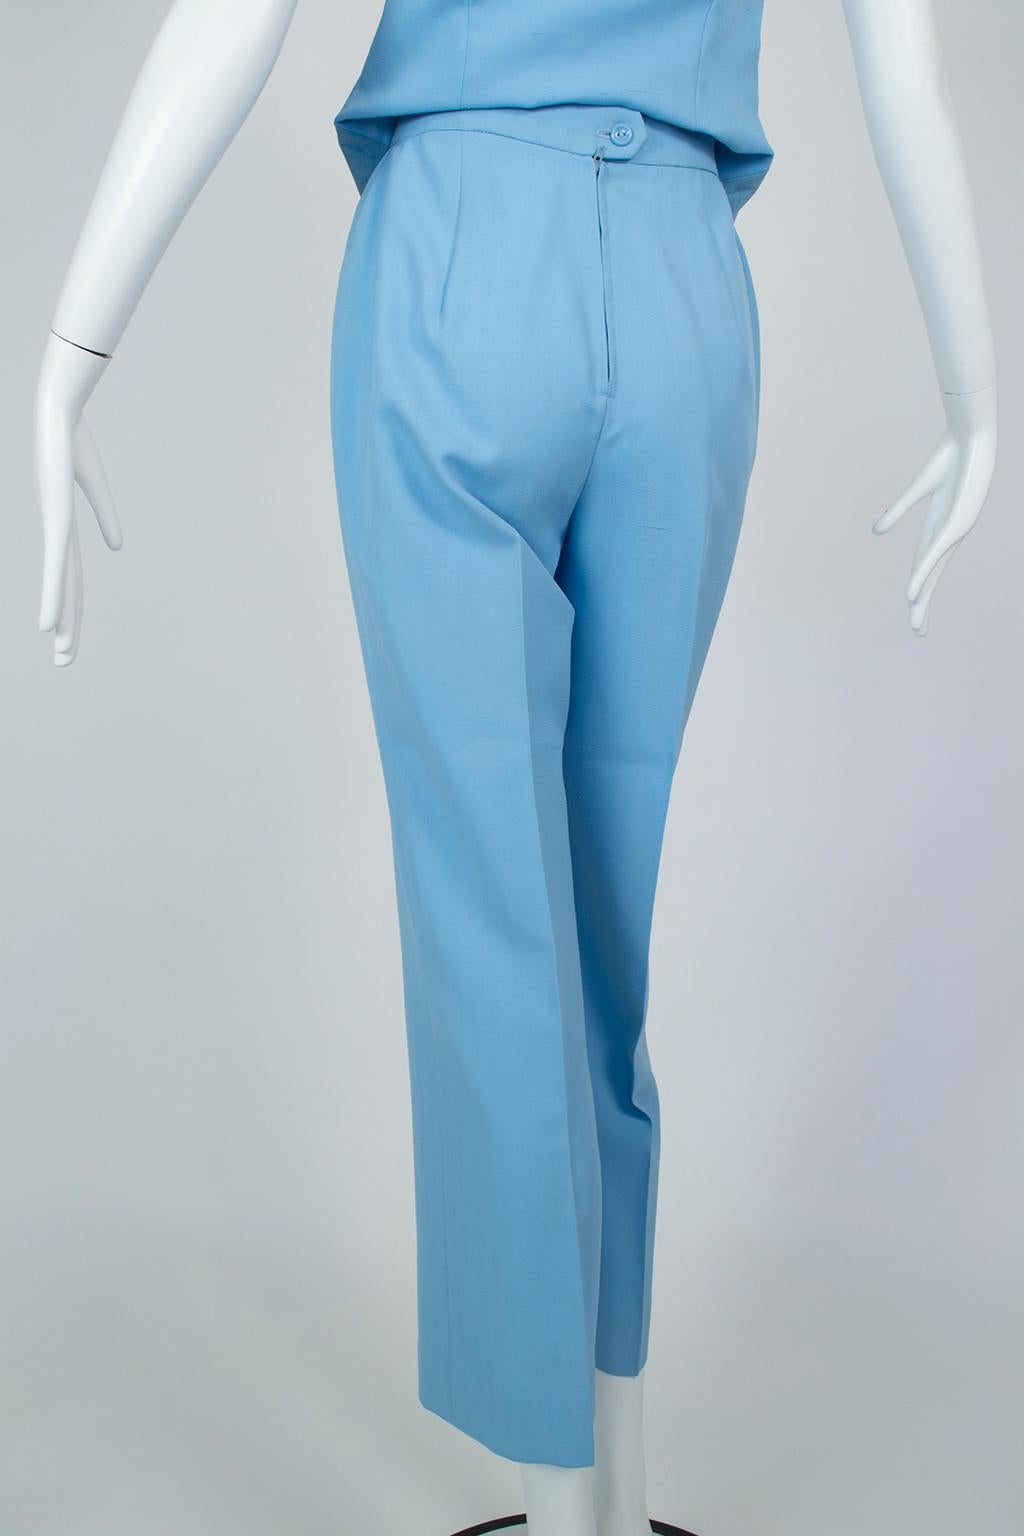 Lilli Ann Paris Powder Blue 3-Piece Western Pant Suit – XS, 1970s For Sale 10